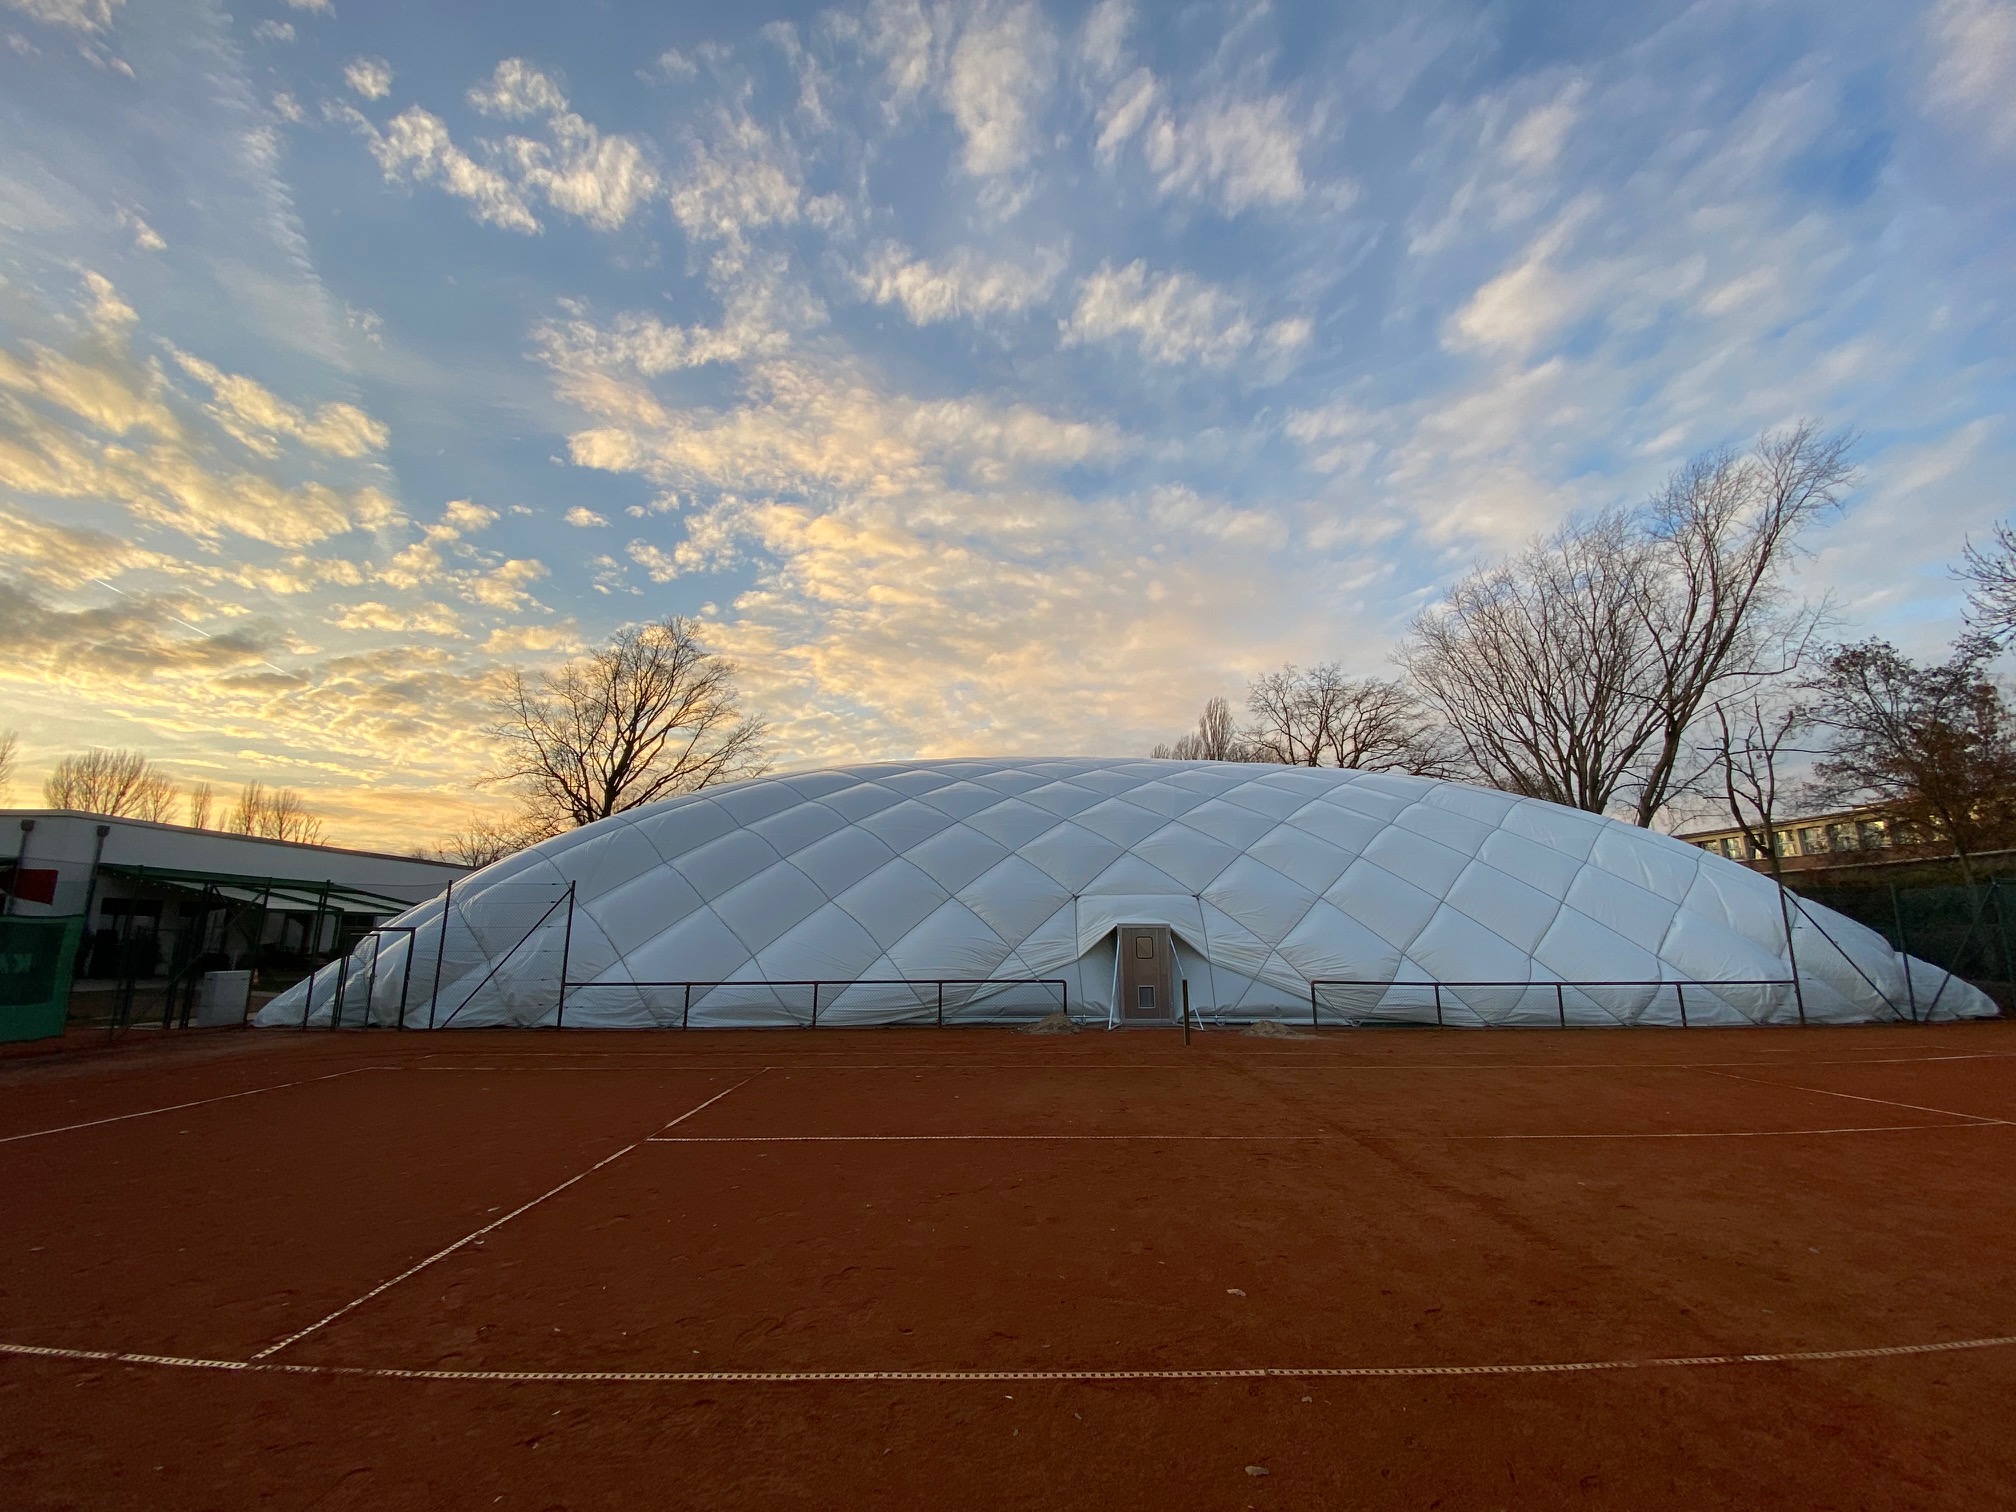 Tolle Februar-Angebote in der Tennis-Traglufthalle